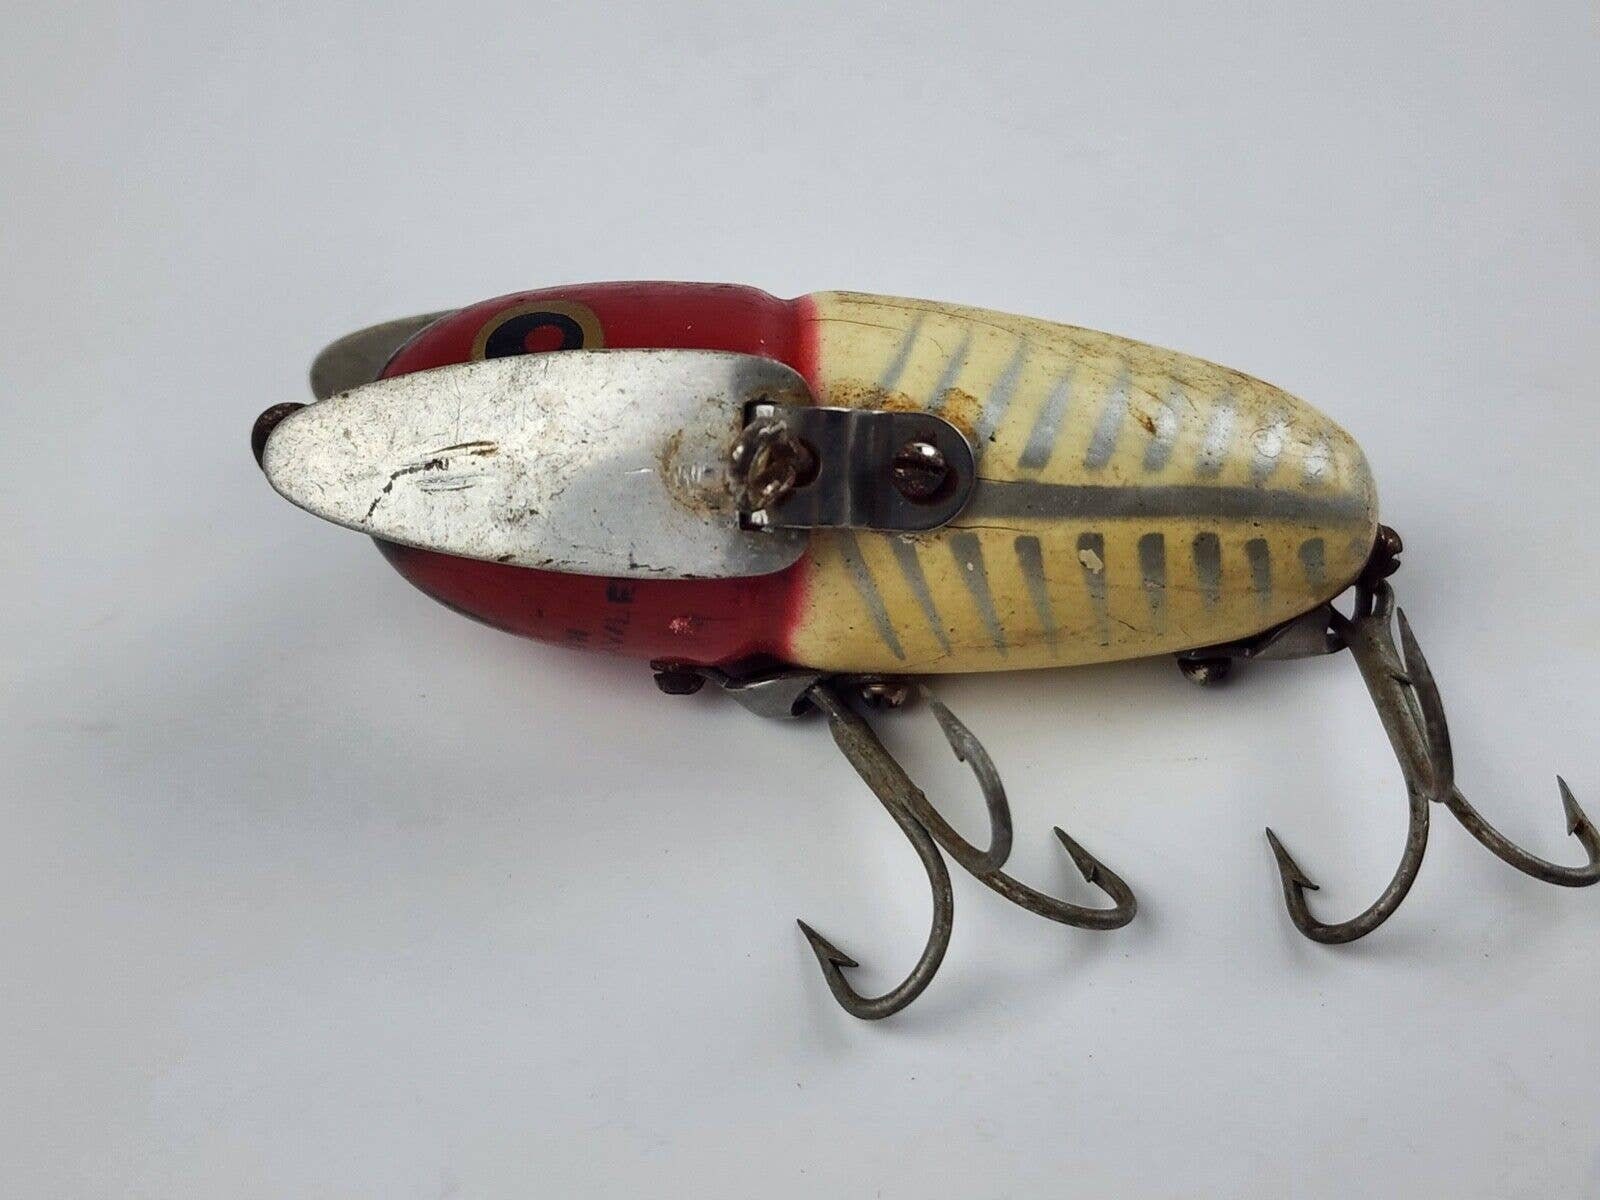 Vintage Heddon Crazy Crawler Wooden Fishing Lure for sale online